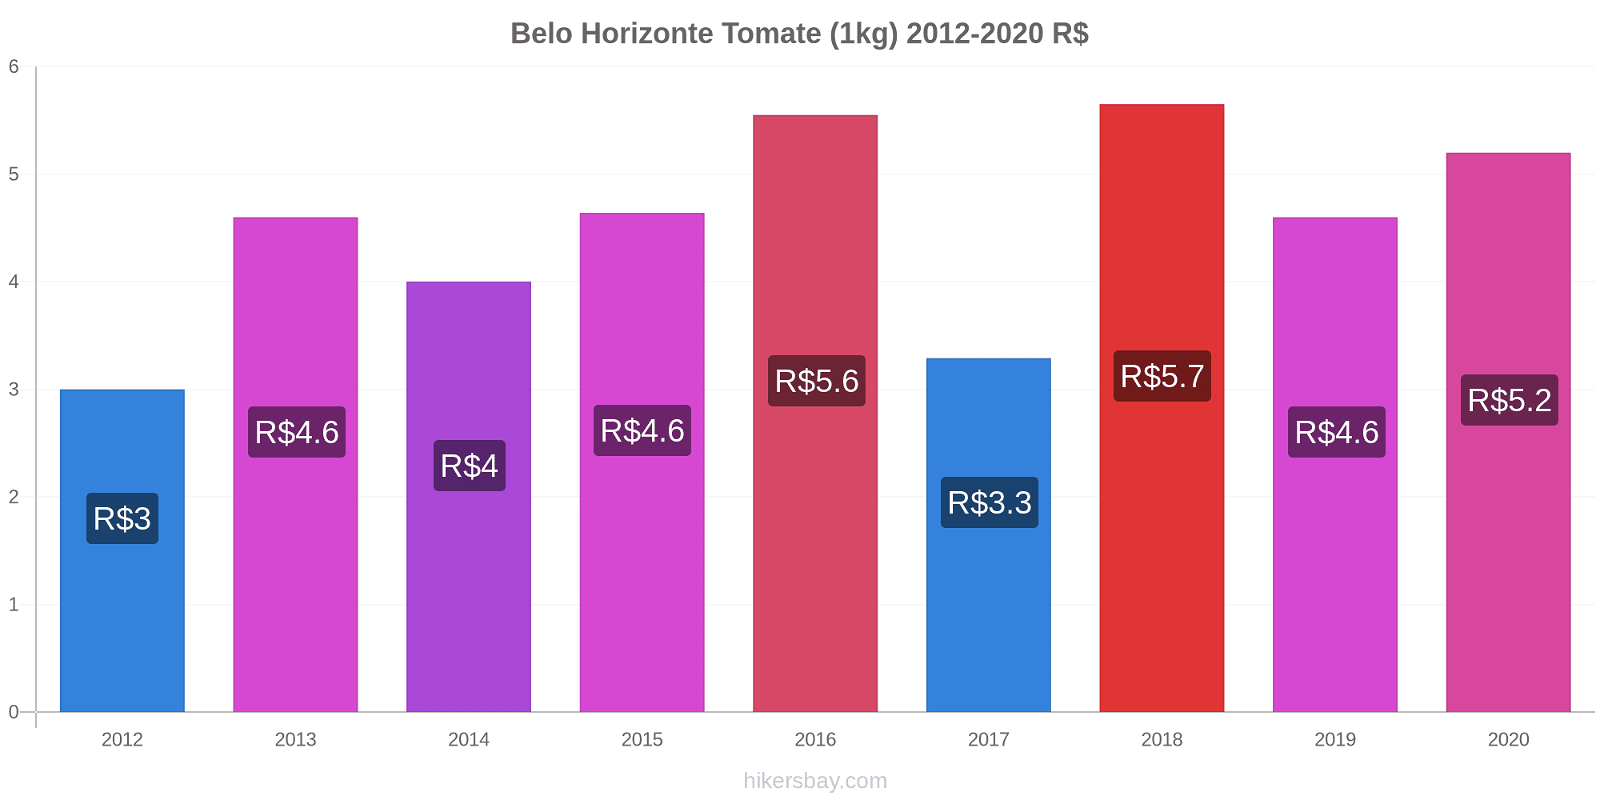 Belo Horizonte cambios de precios Tomate (1kg) hikersbay.com